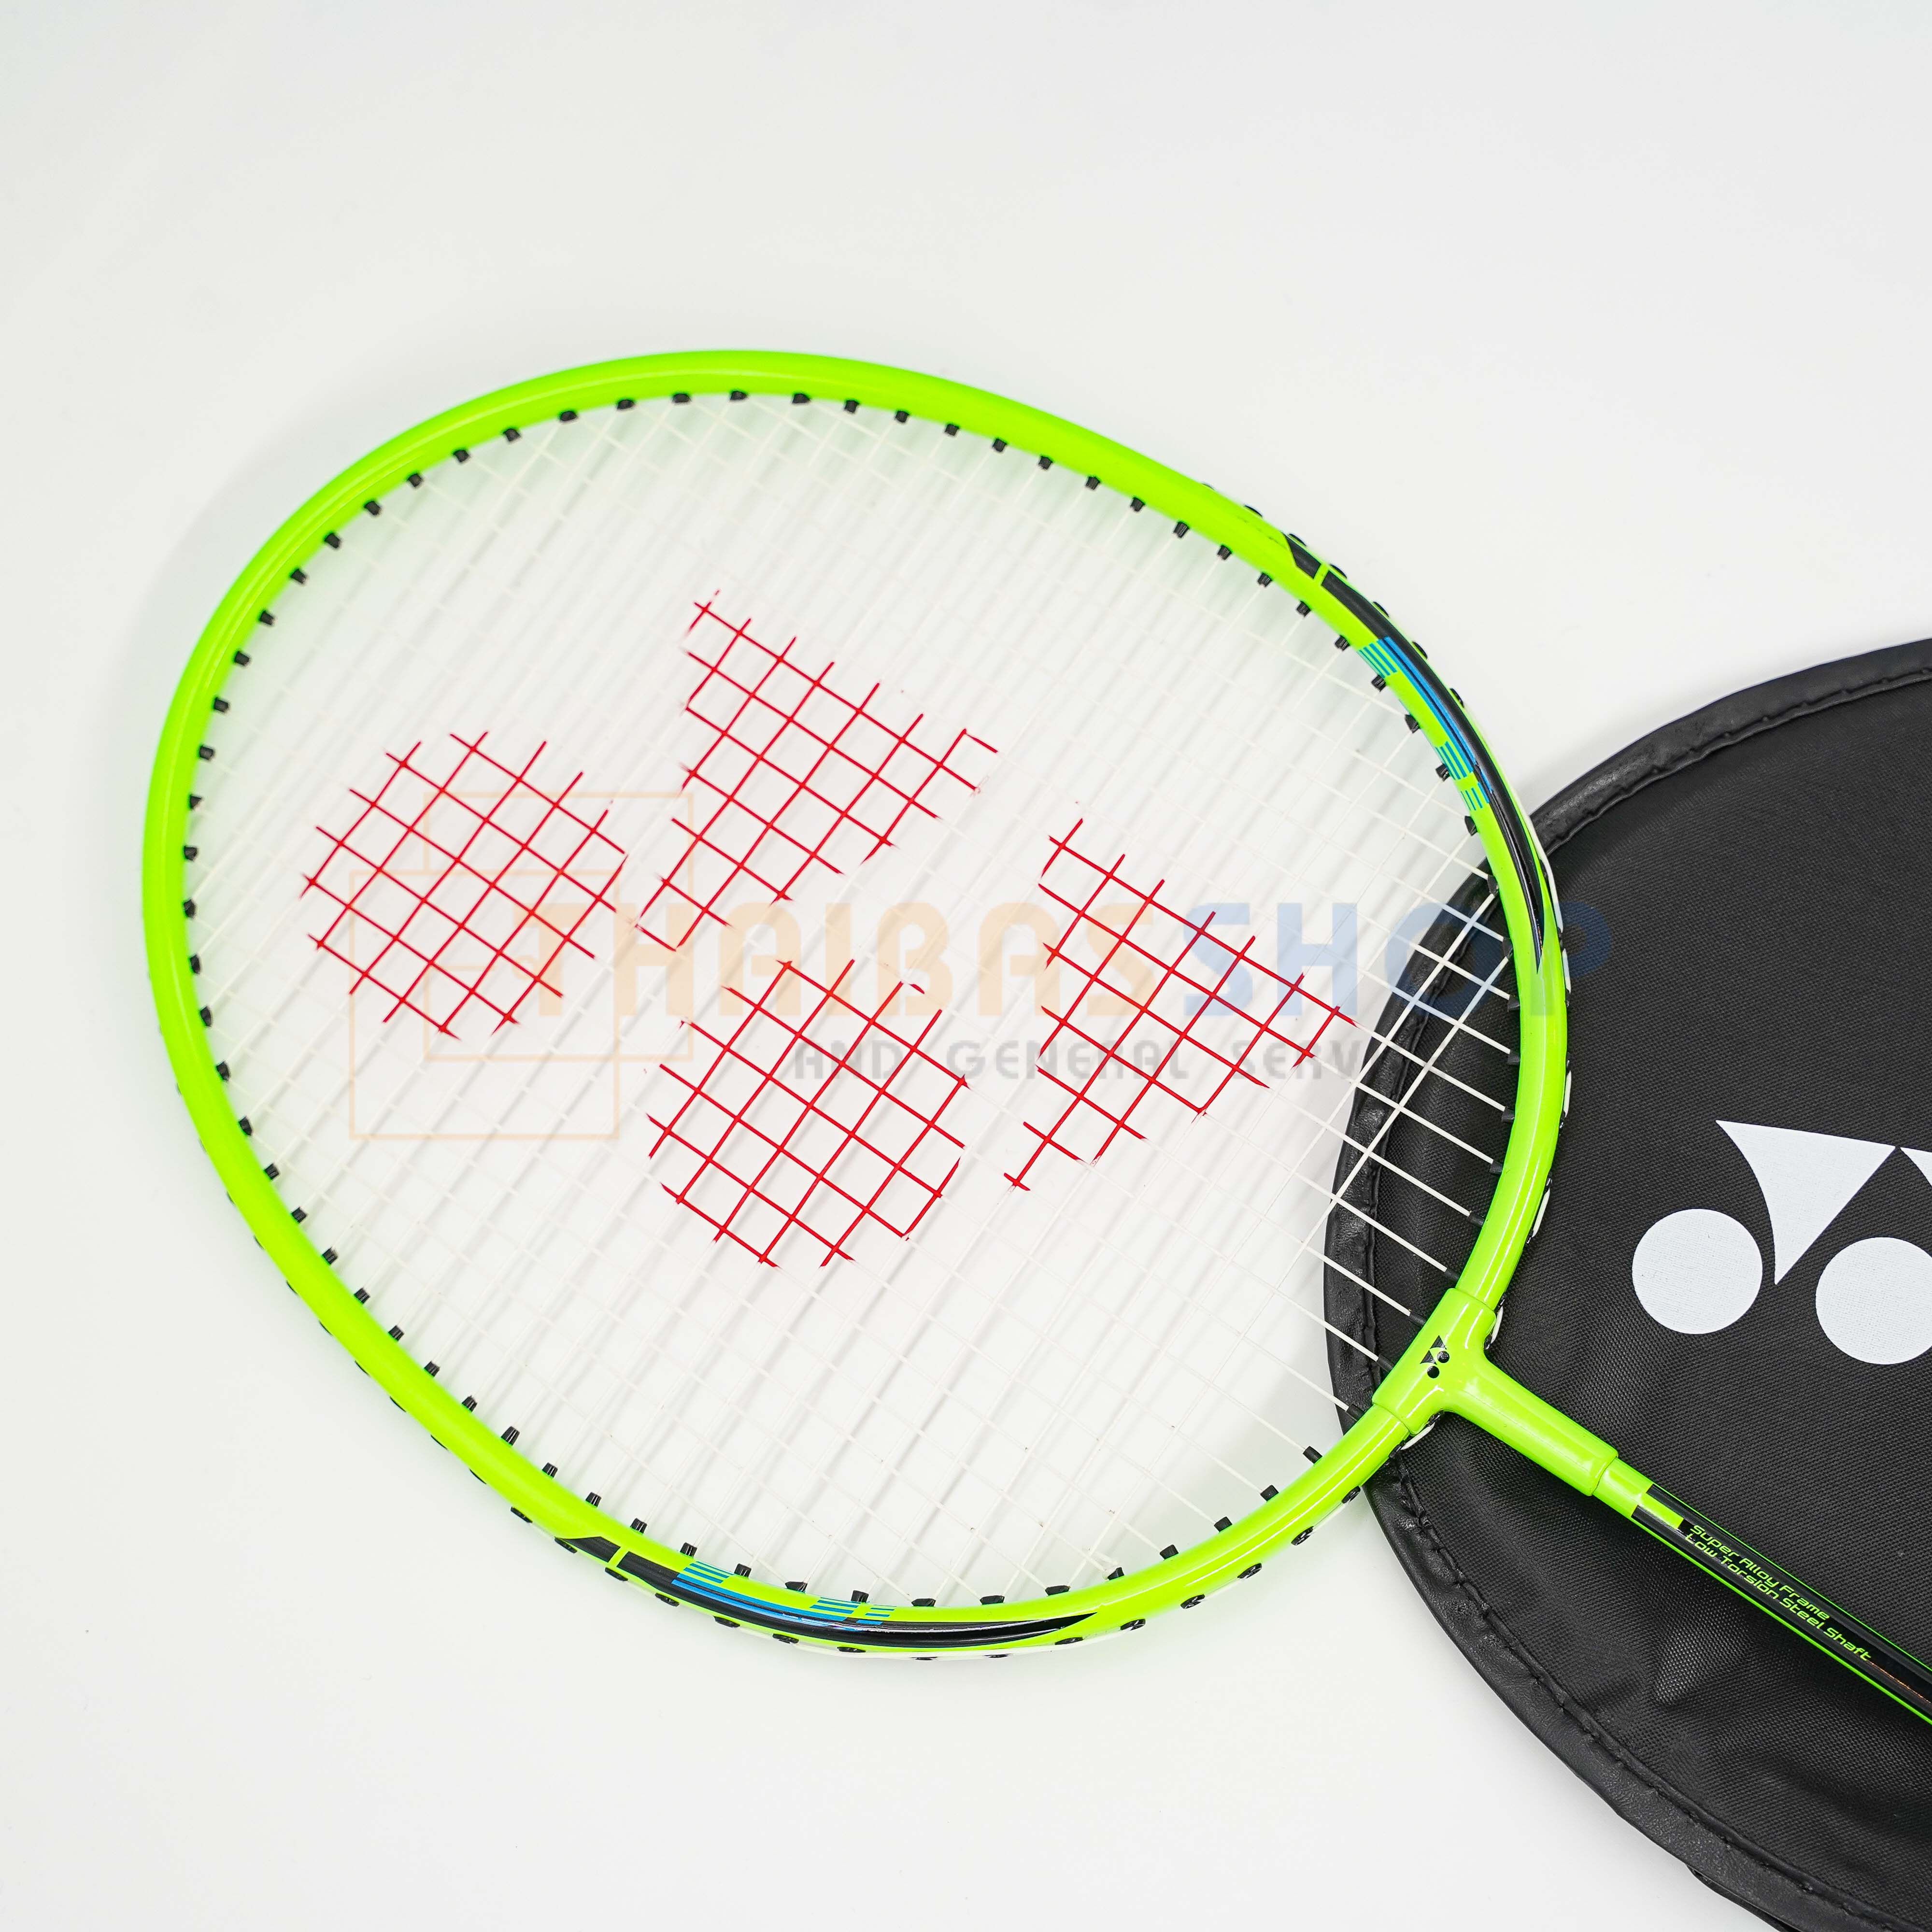 ข้อมูลเกี่ยวกับ Badminton racket badminton racket with envelope Yonex B4000 Badminton racket 100% genuine